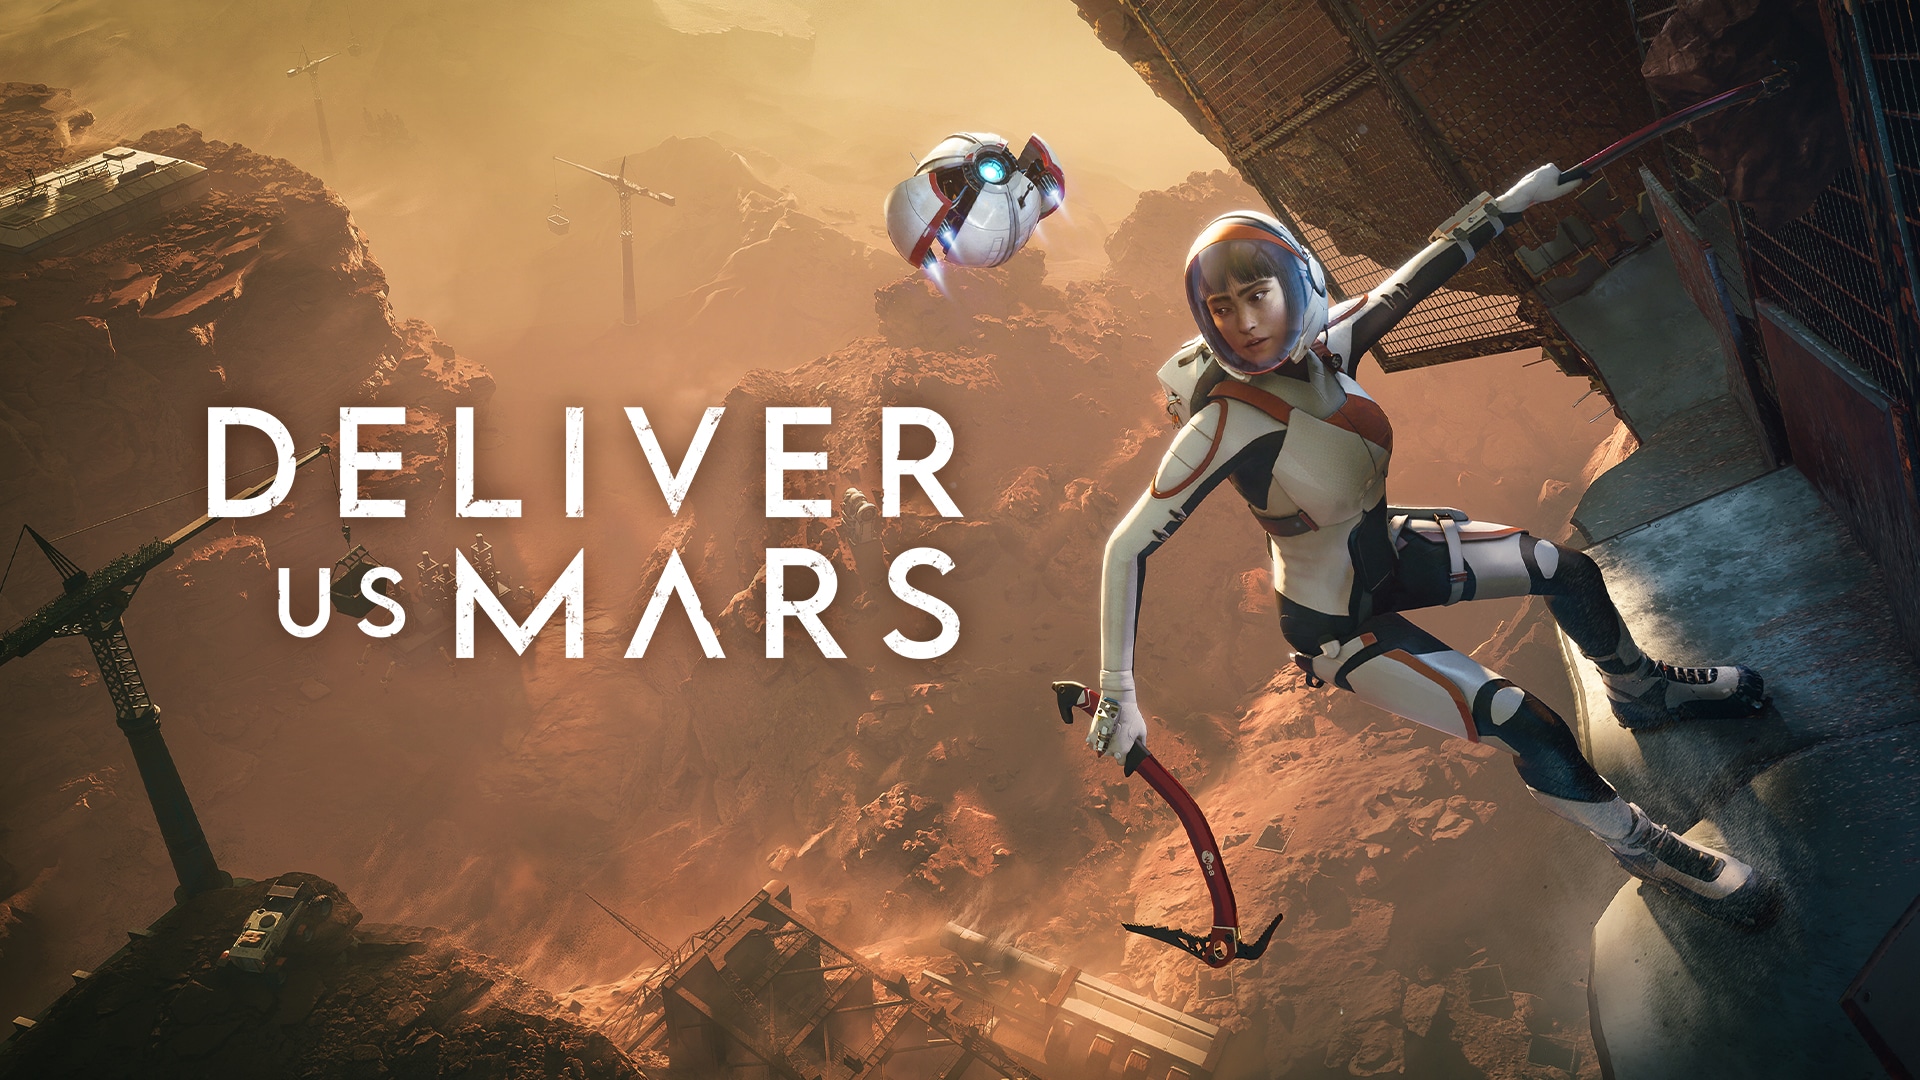 Arriva il sequel di Deliver Us The Moon: Deliver Us Mars uscirà per PC e console thumbnail